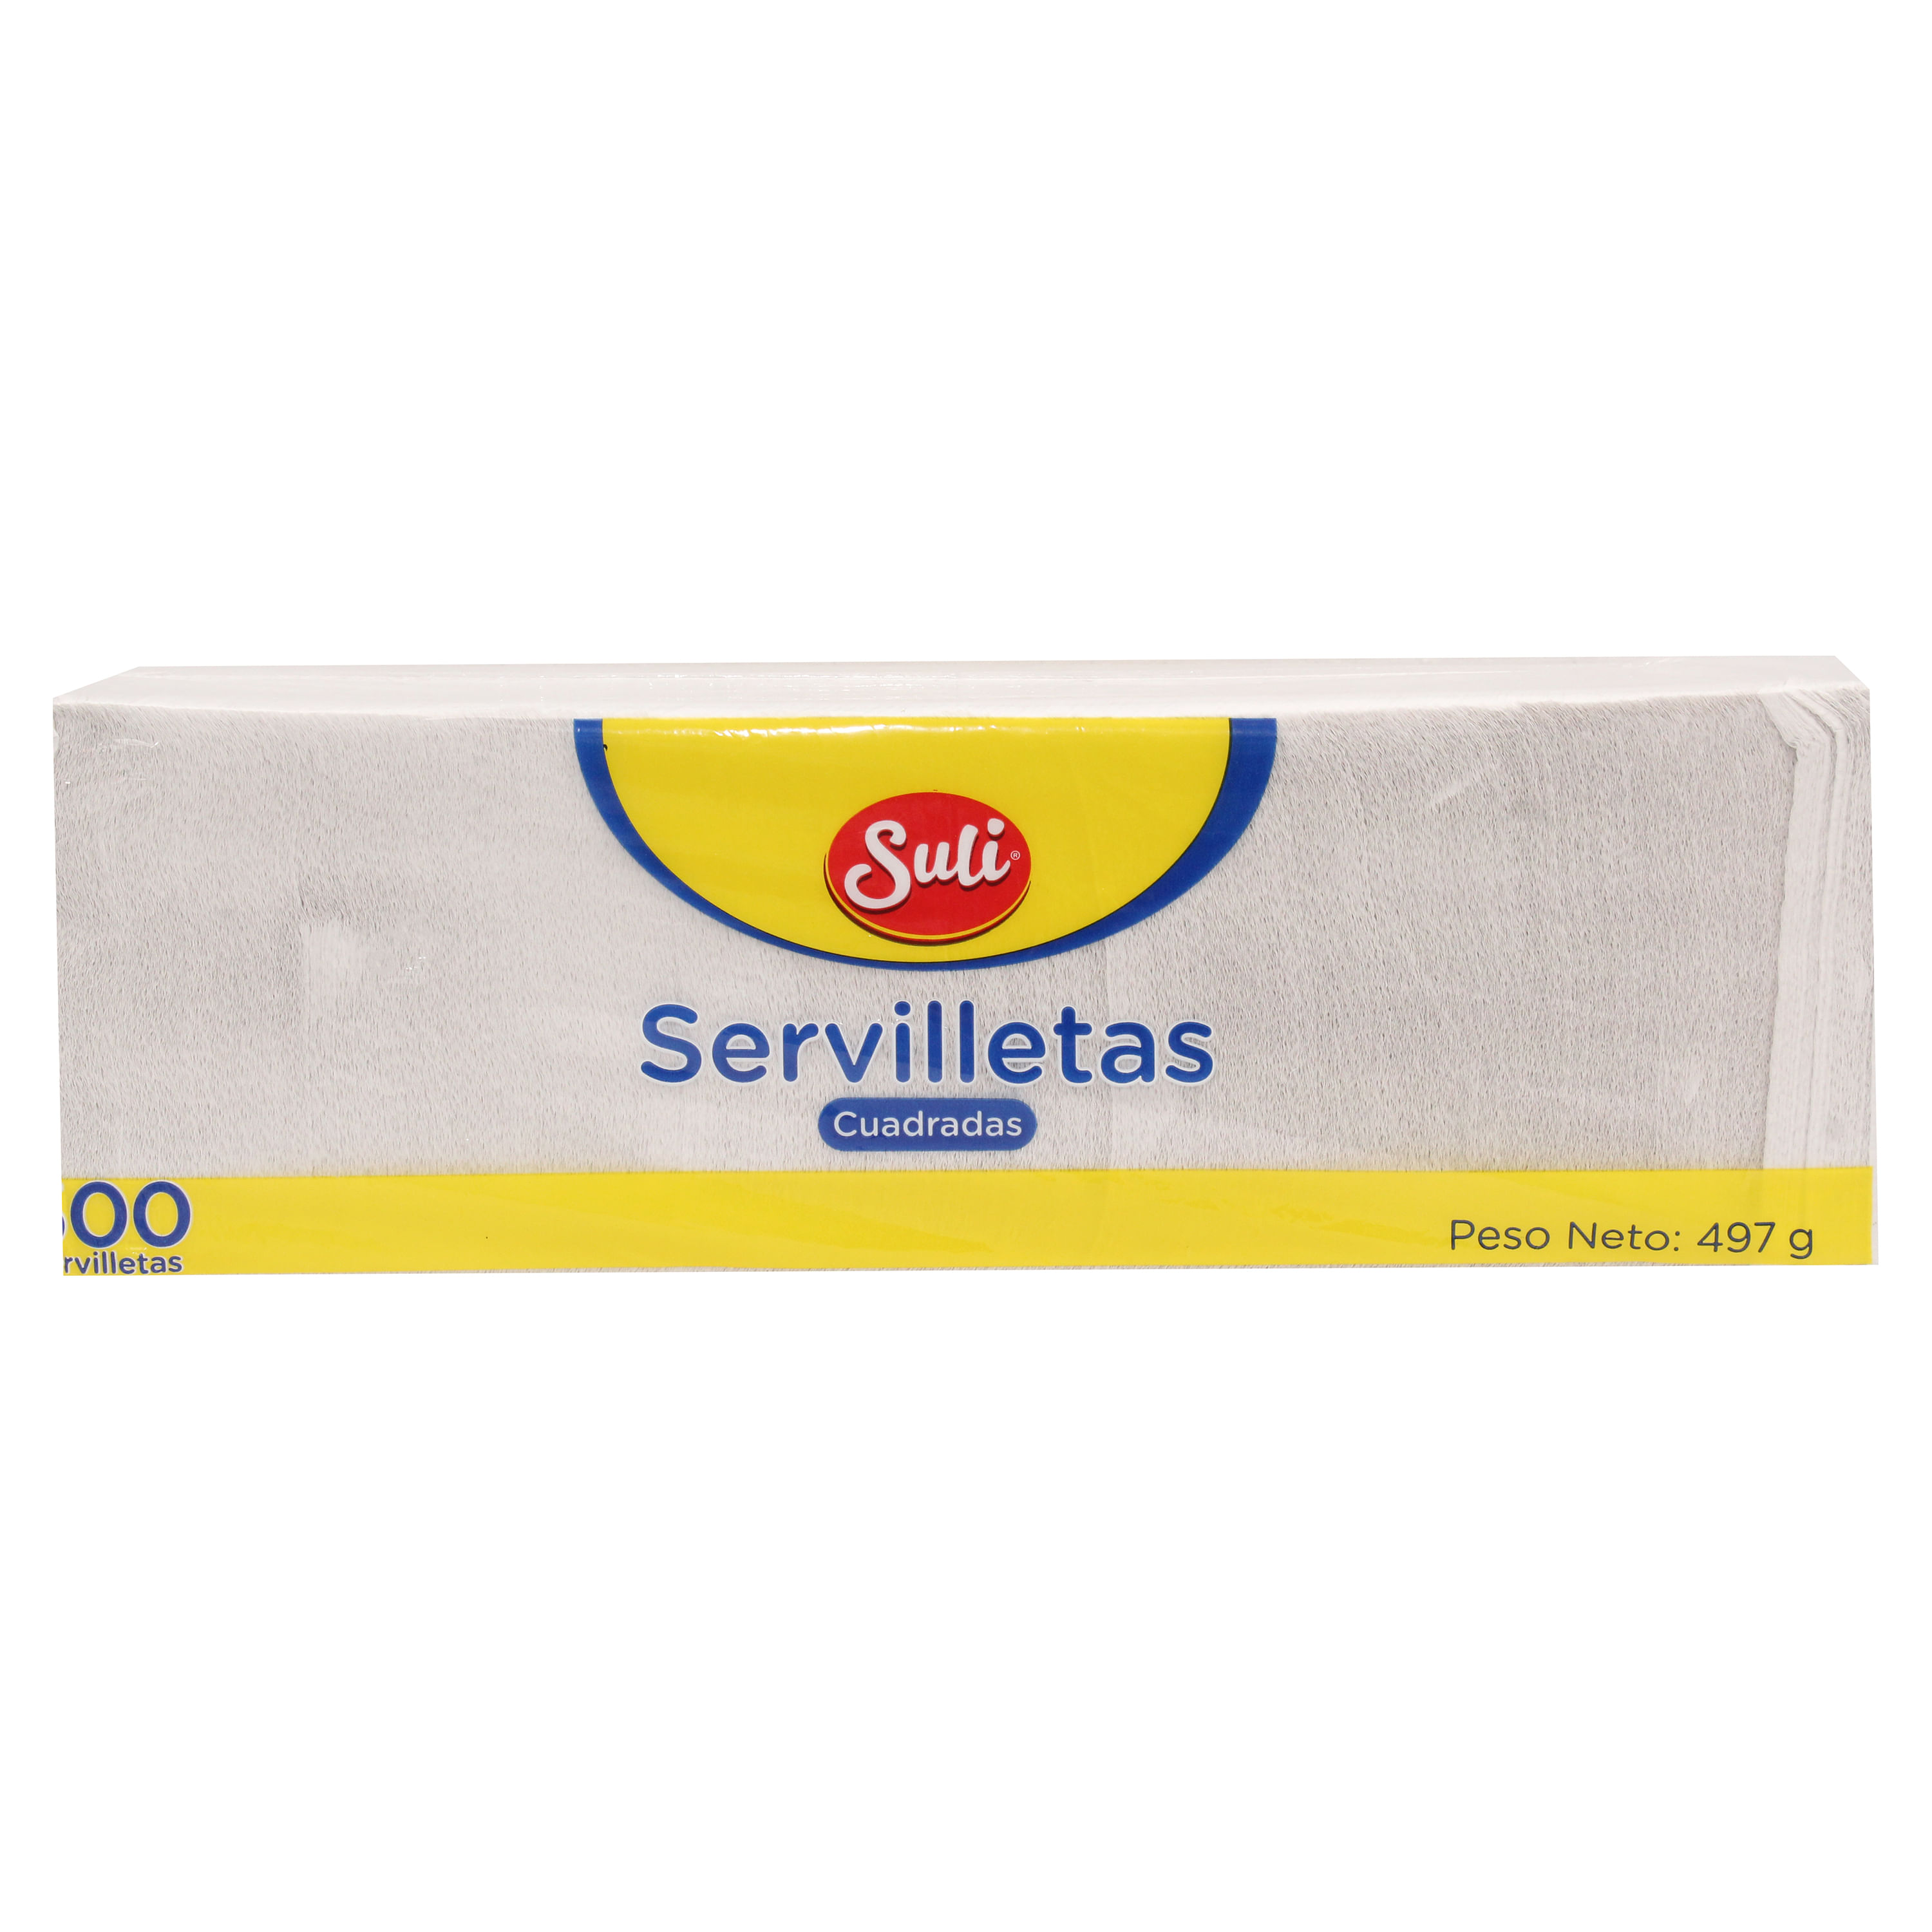 Servilleta-Cuadrada-Suli-500Unidades-1-34205